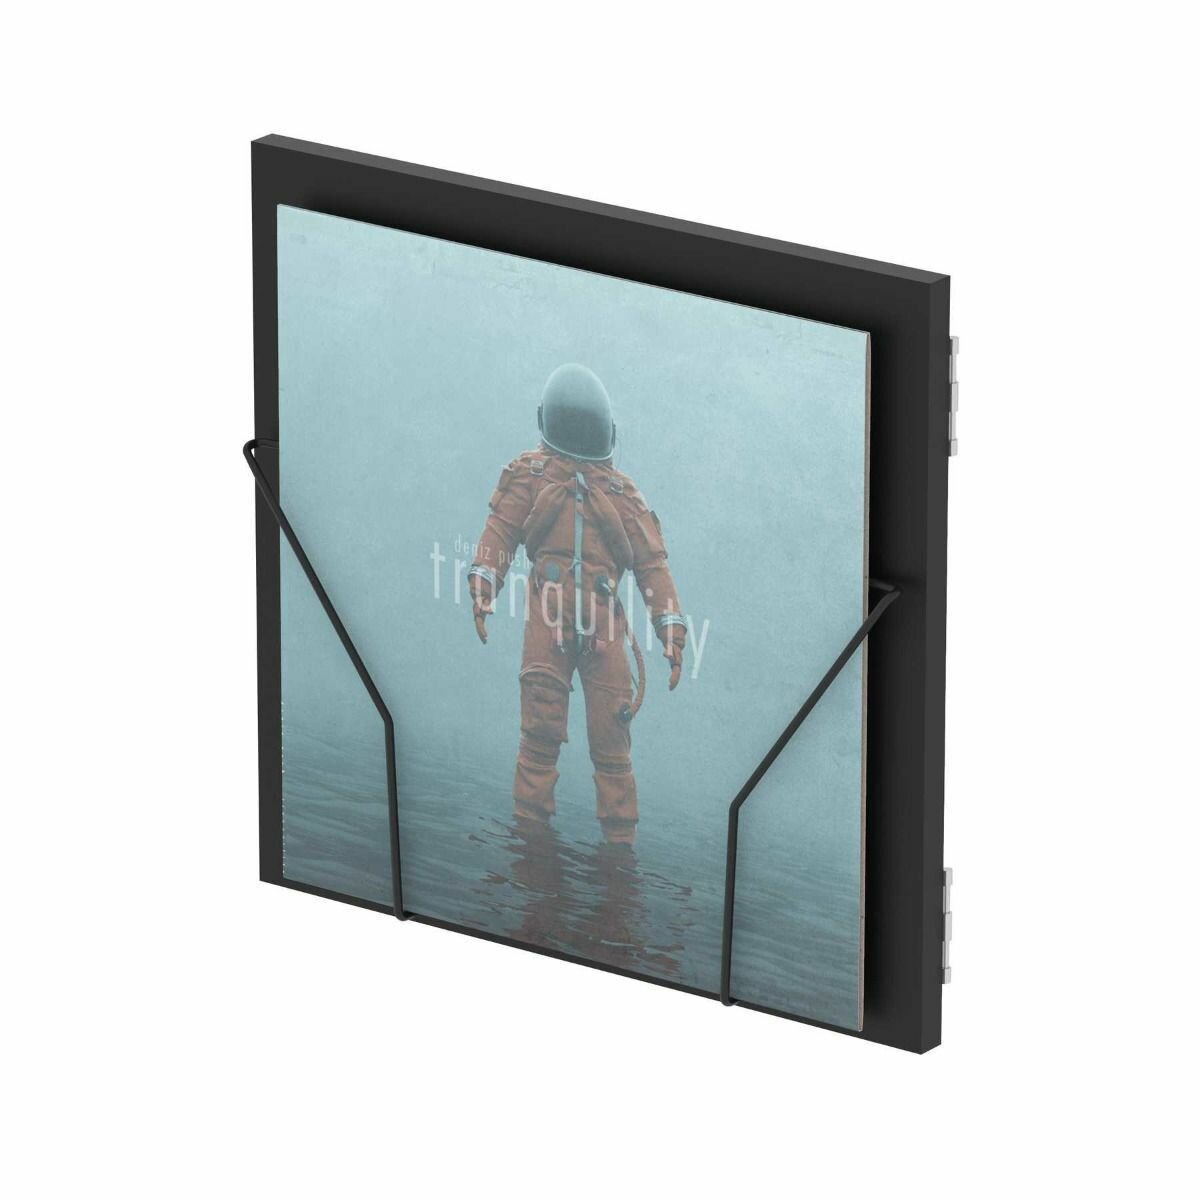 Glorious Record Box Display Door Black подставка-дверца для систем хранения пластинок цвет чёрный